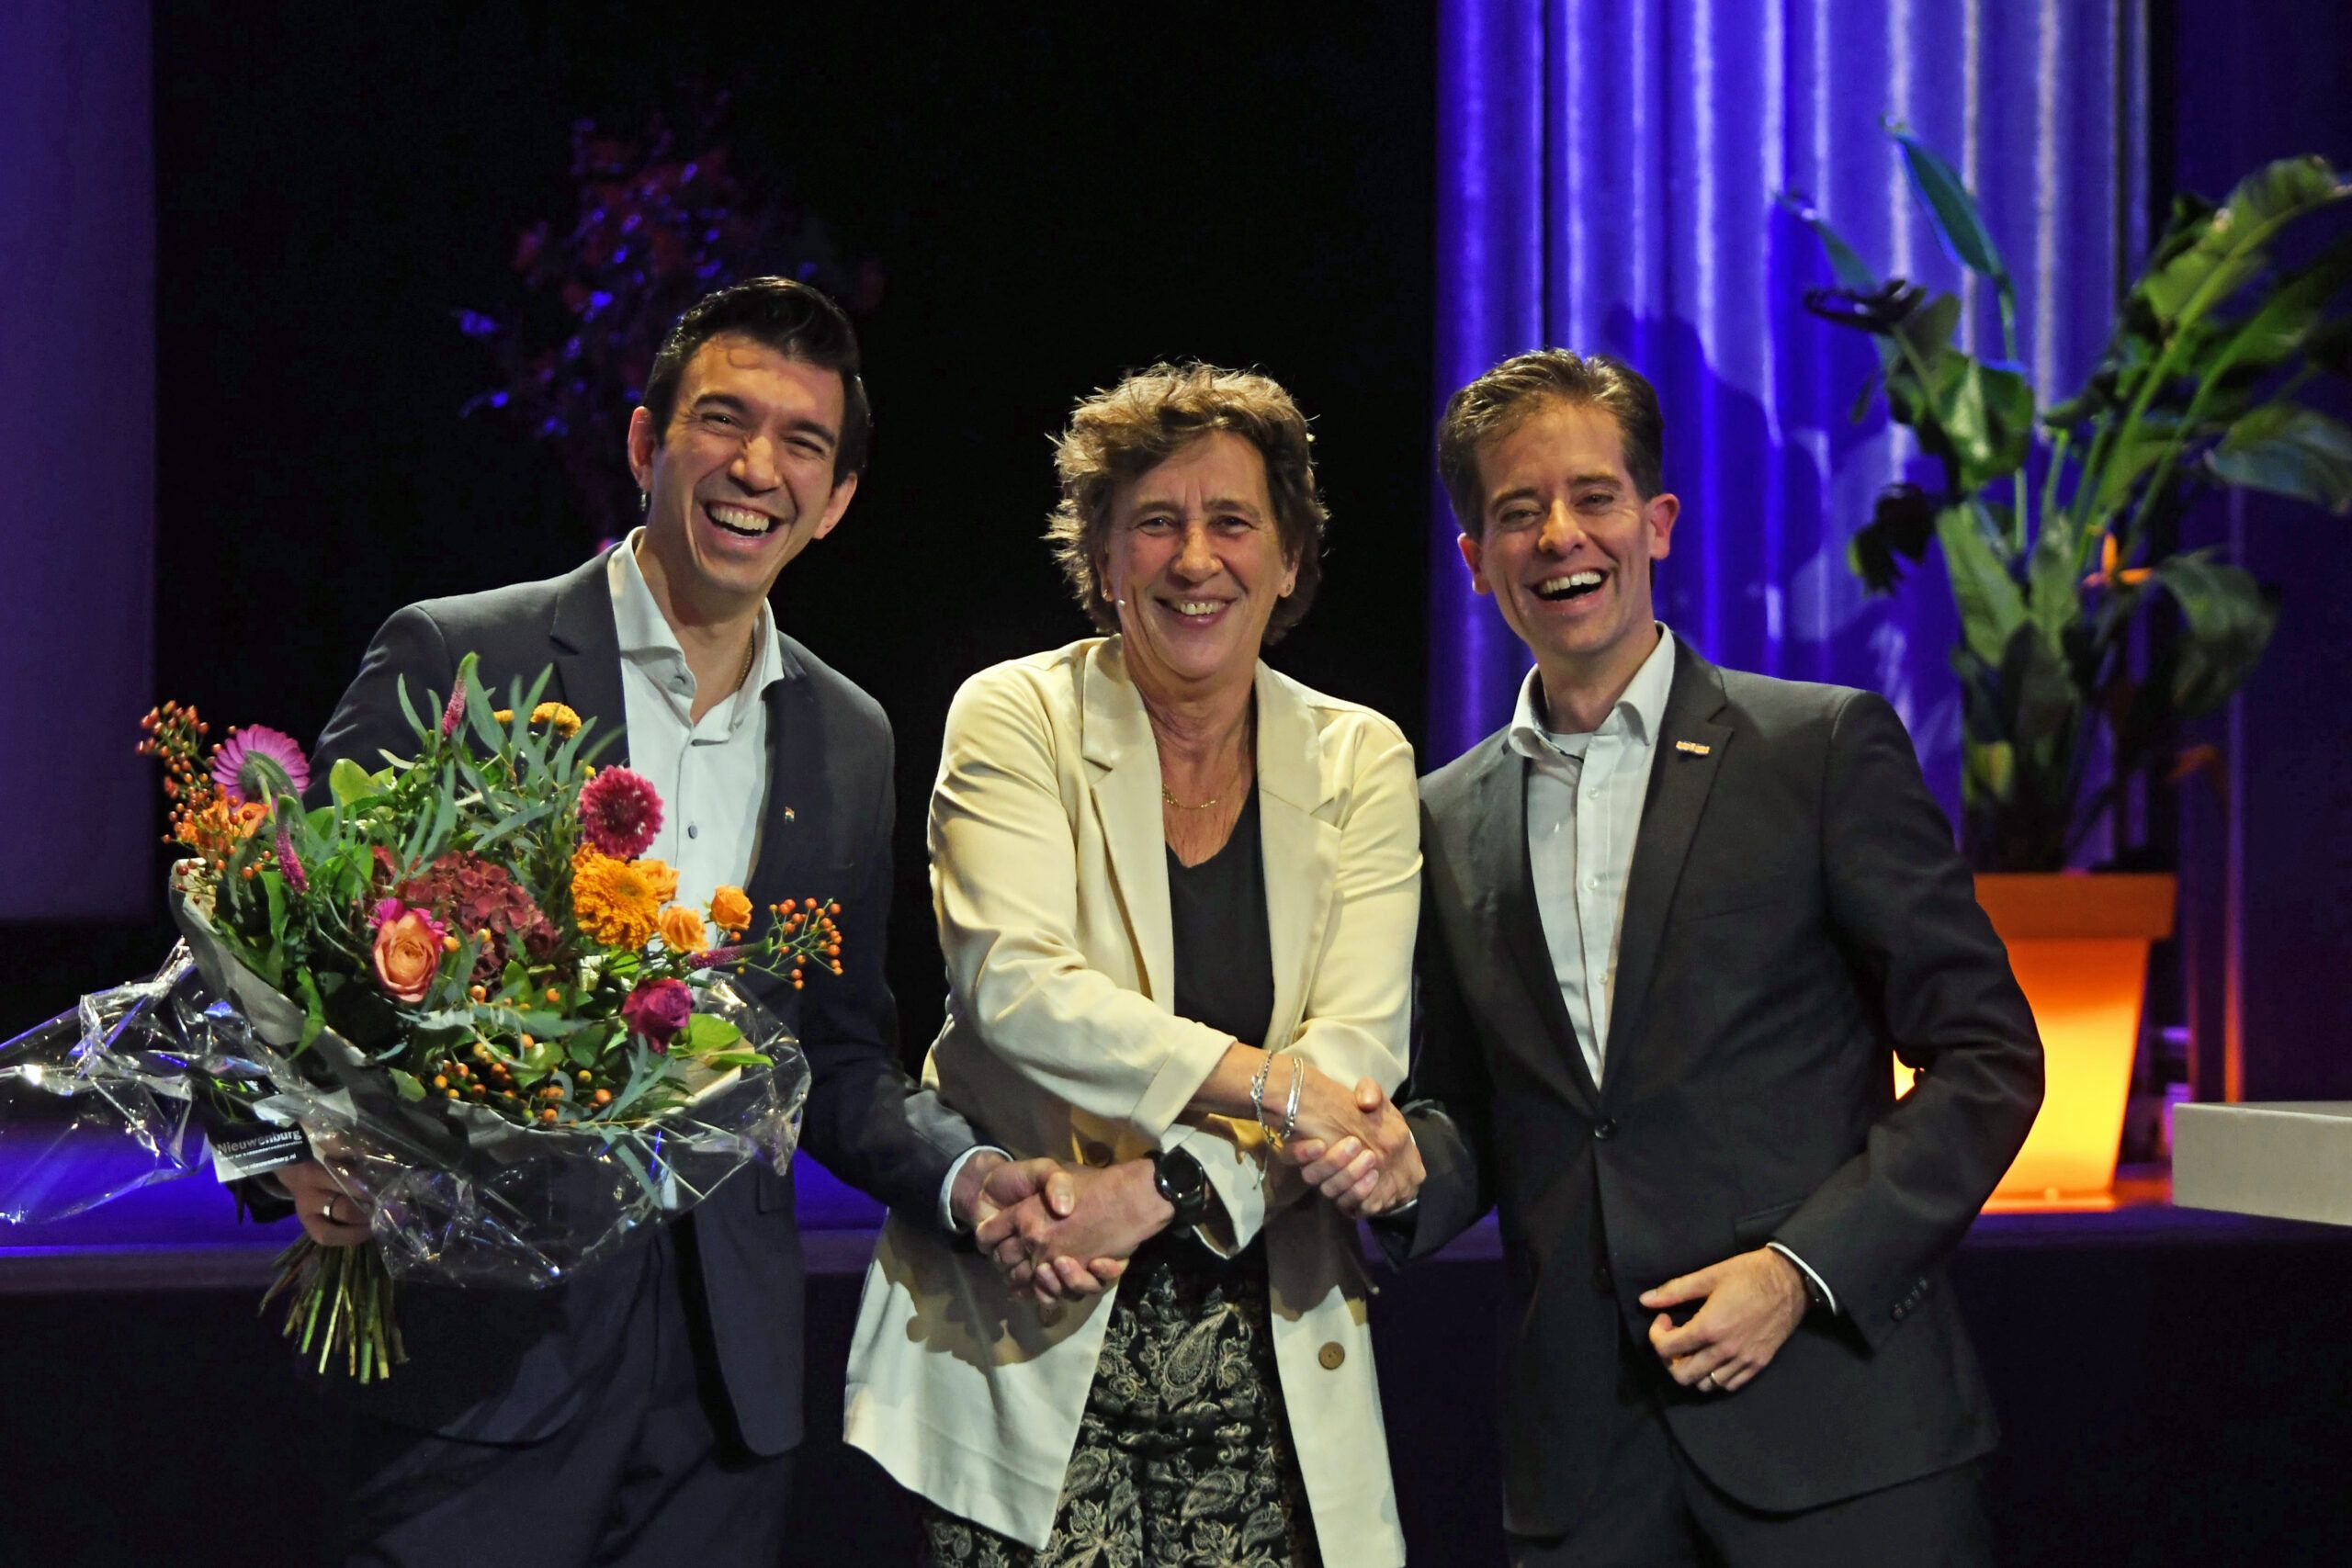 De voorzitter van NOC*NSF (midden) schudt de handen met voorzitter (rechts) en de vicevoorzitter (links) van Branchevereniging Esports Nederland.